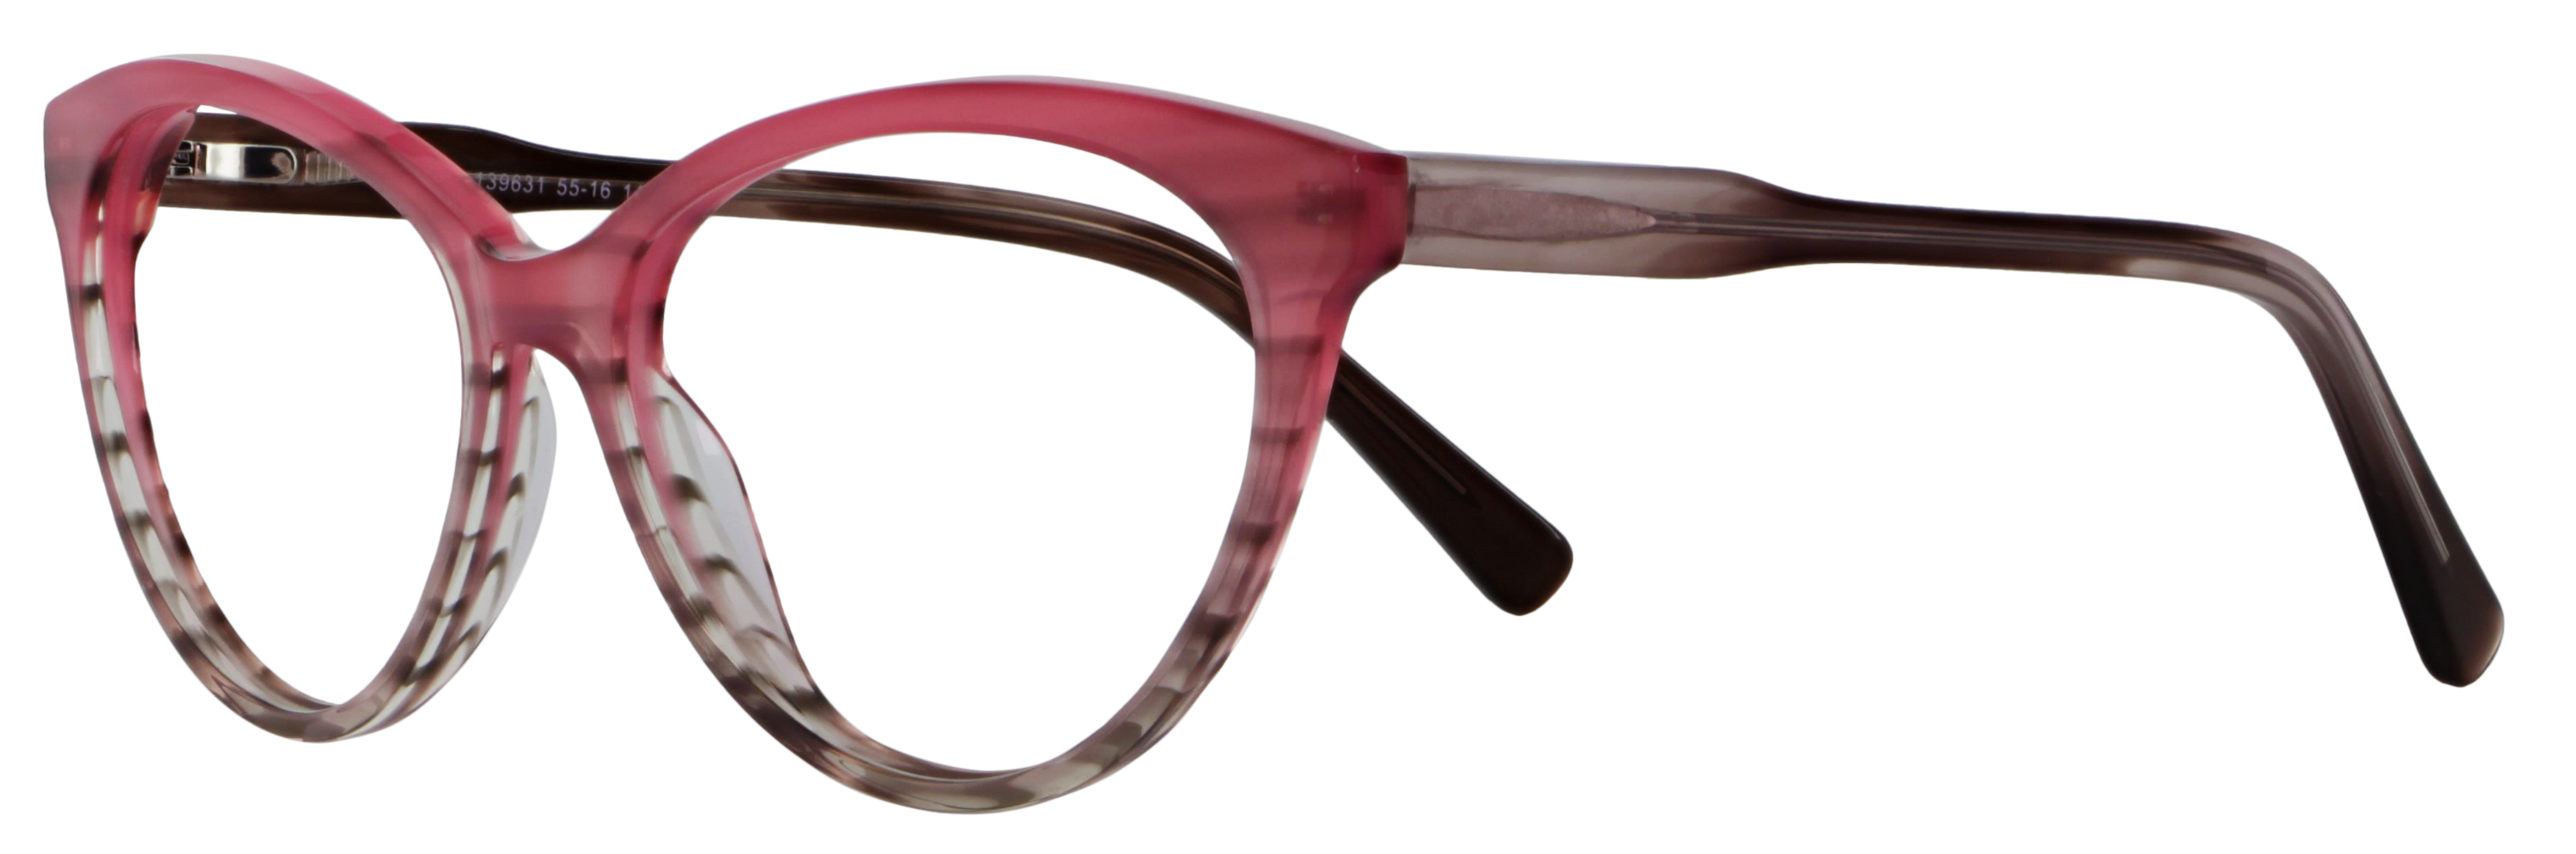 Das Bild zeigt die Korrektionsbrille 139631 von der Marke Abele Optik in rosa grau.